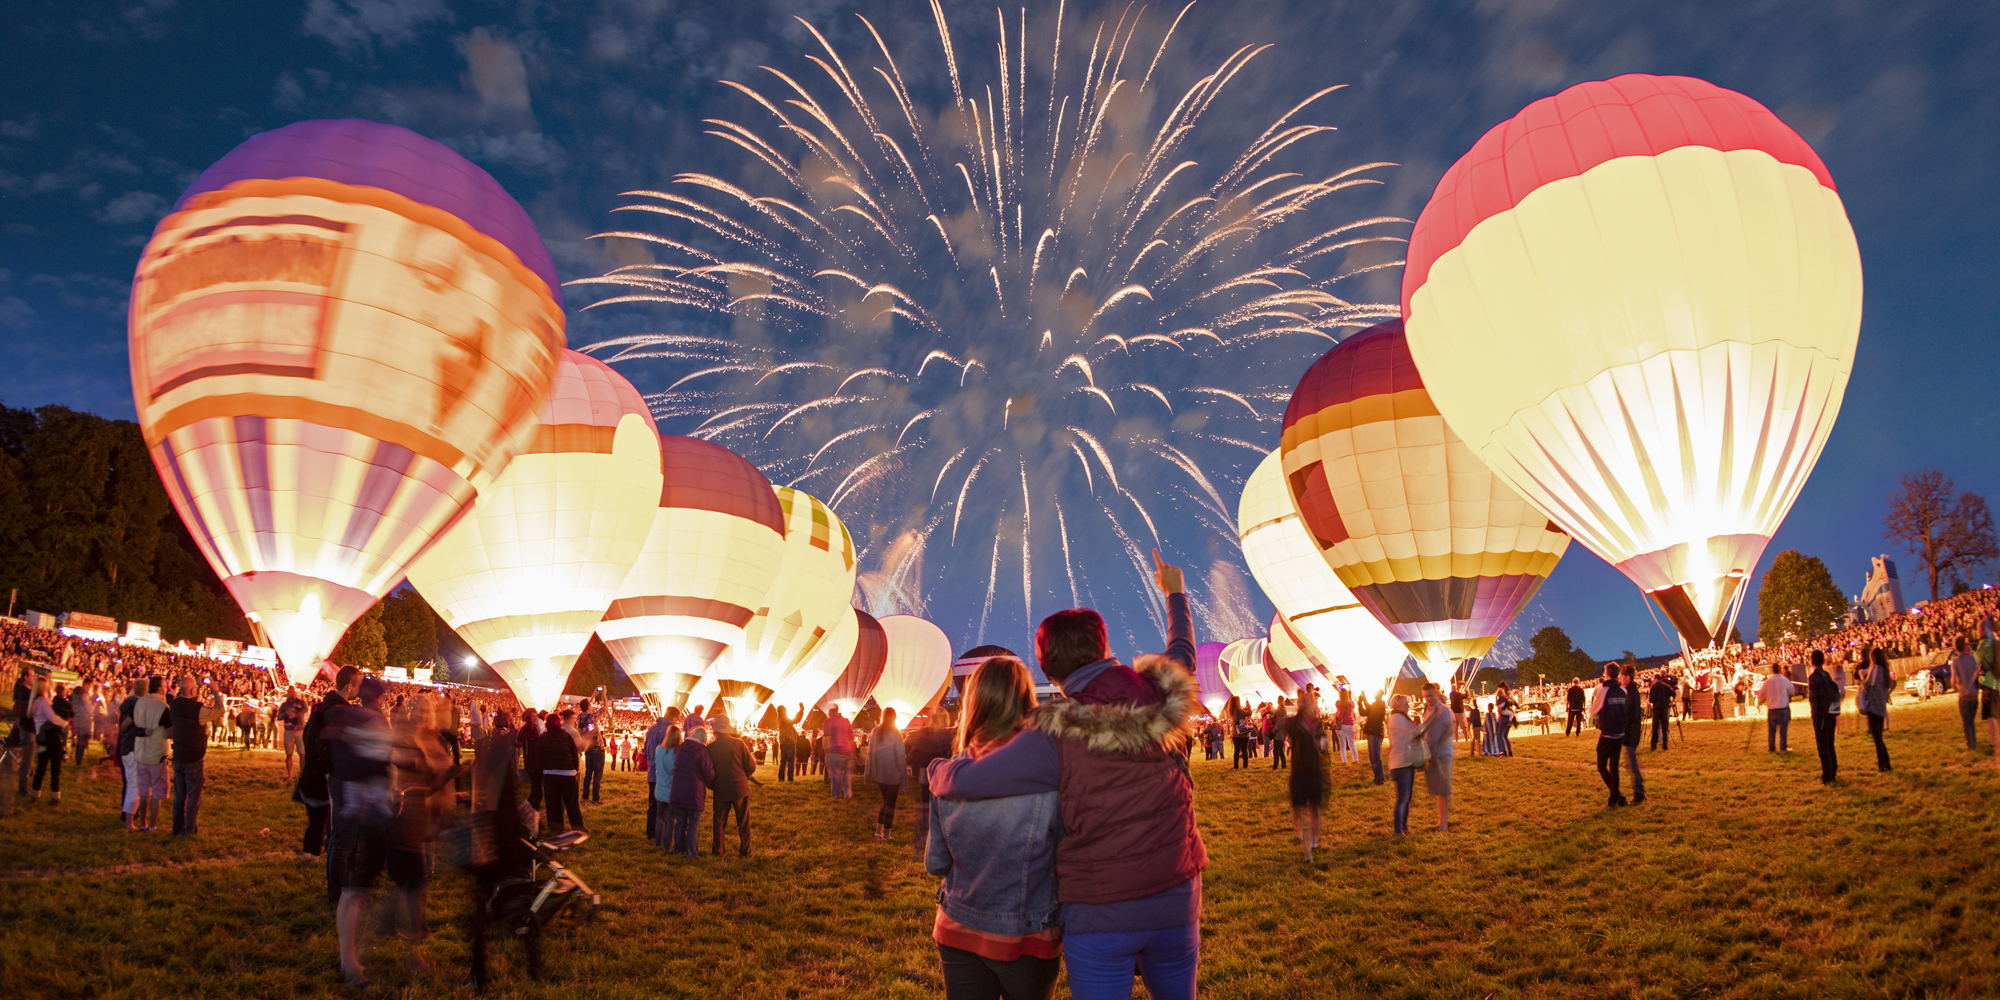 Feuerwerk und beleuchtete Heißluftballons bilden den krönenden Abschlusss der Bristol International Balloon Fiesta. © VisitBritain/Rod Edwards